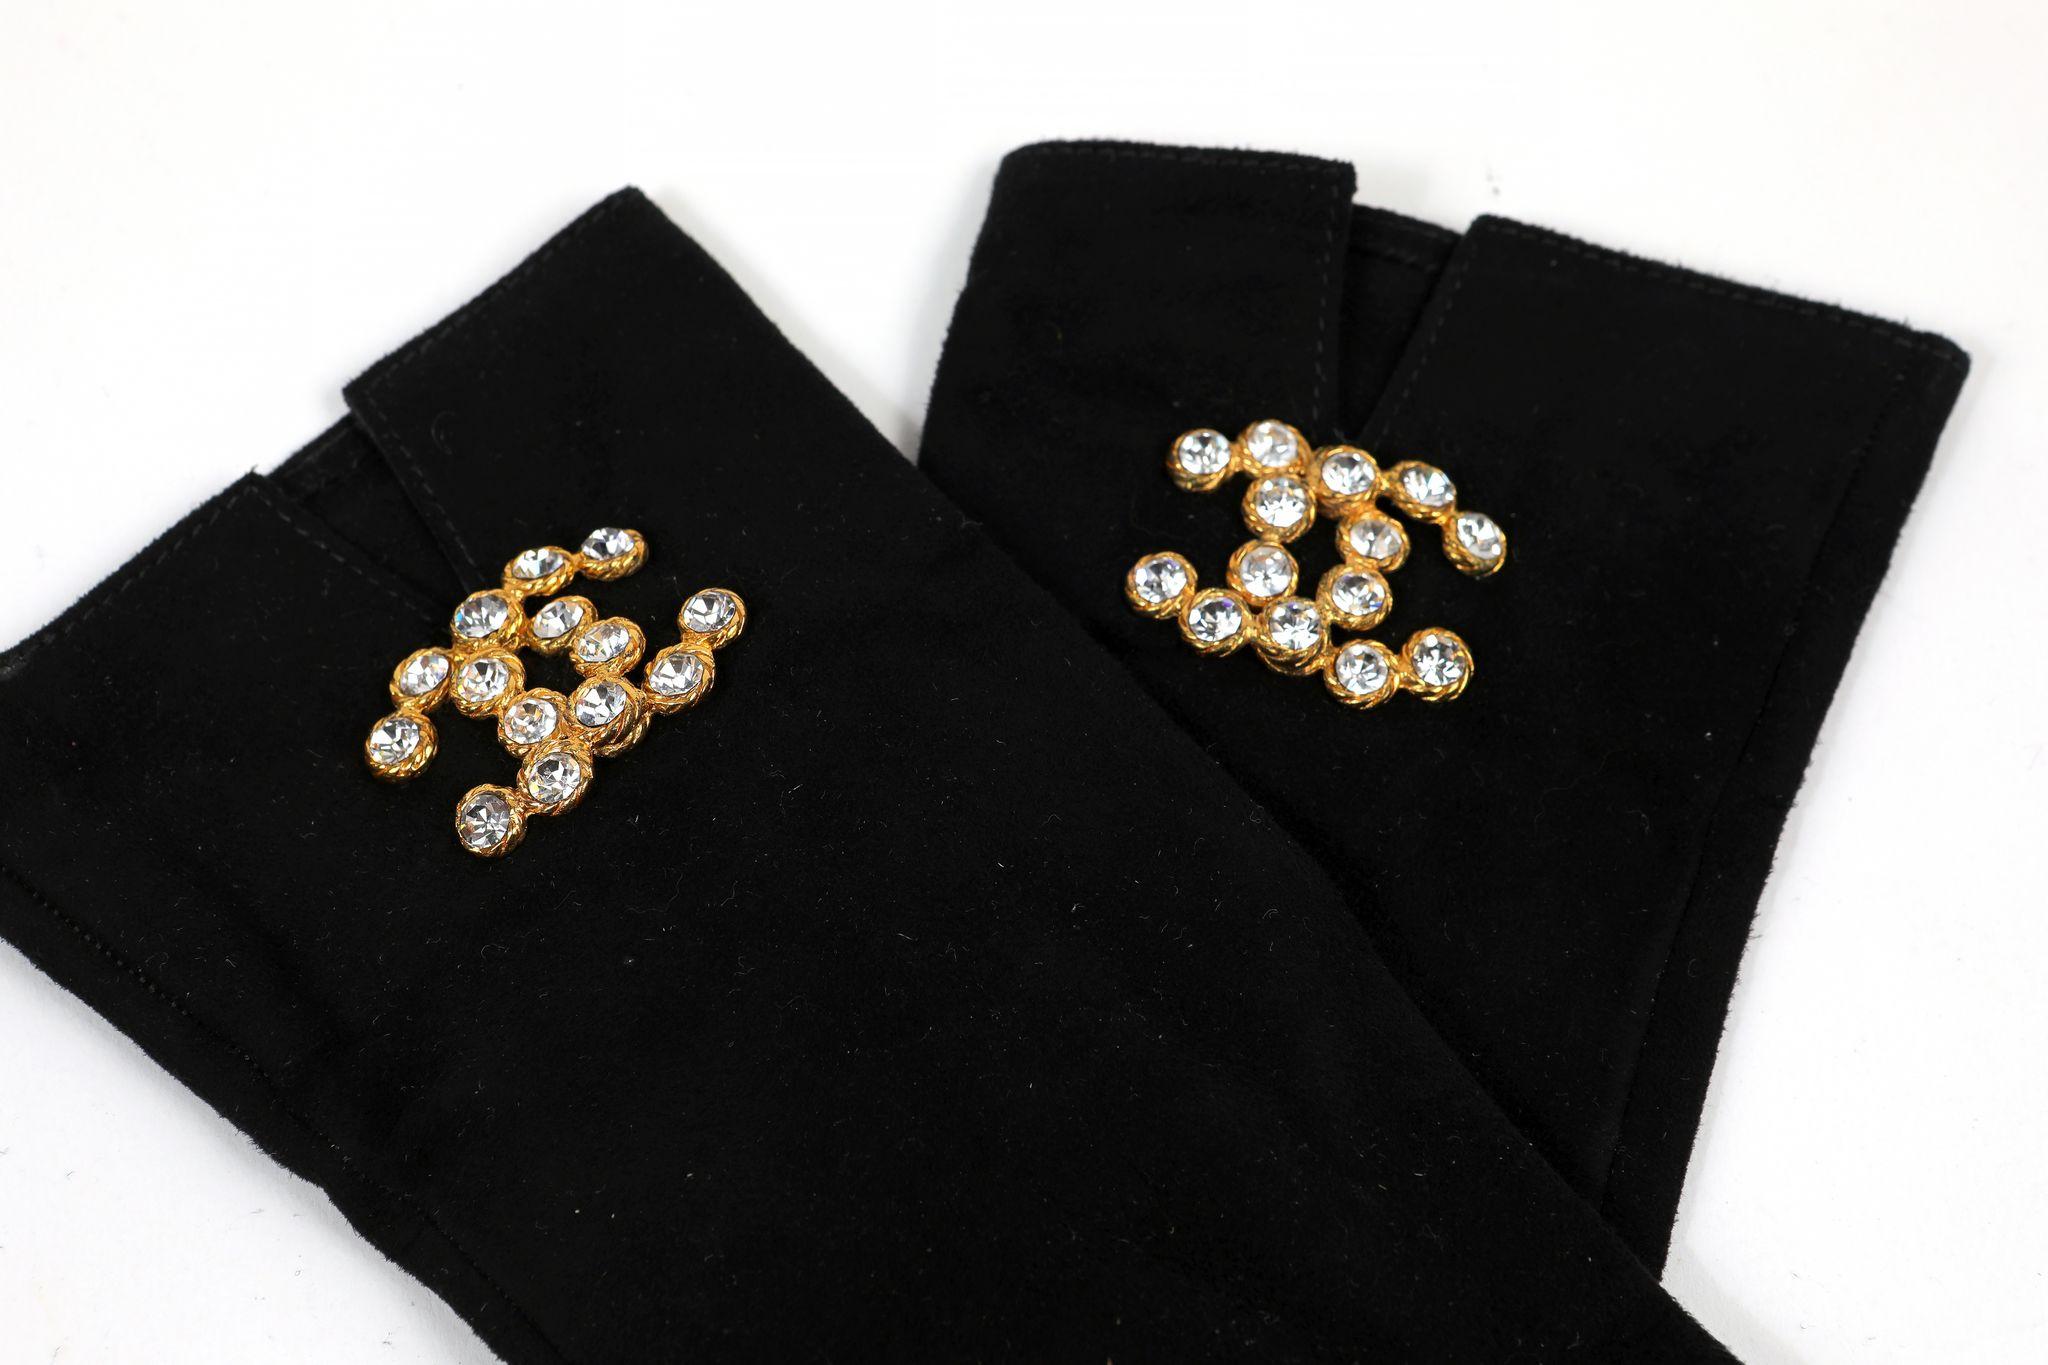 Diese authentischen Chanel Black Suede Crystal CC Handschuhe sind in tadellosem Zustand.  Weiches schwarzes Wildleder mit goldfarbenen, ineinandergreifenden CCs in Kristall.  Inklusive Tasche oder Box.  

ACO 13740
